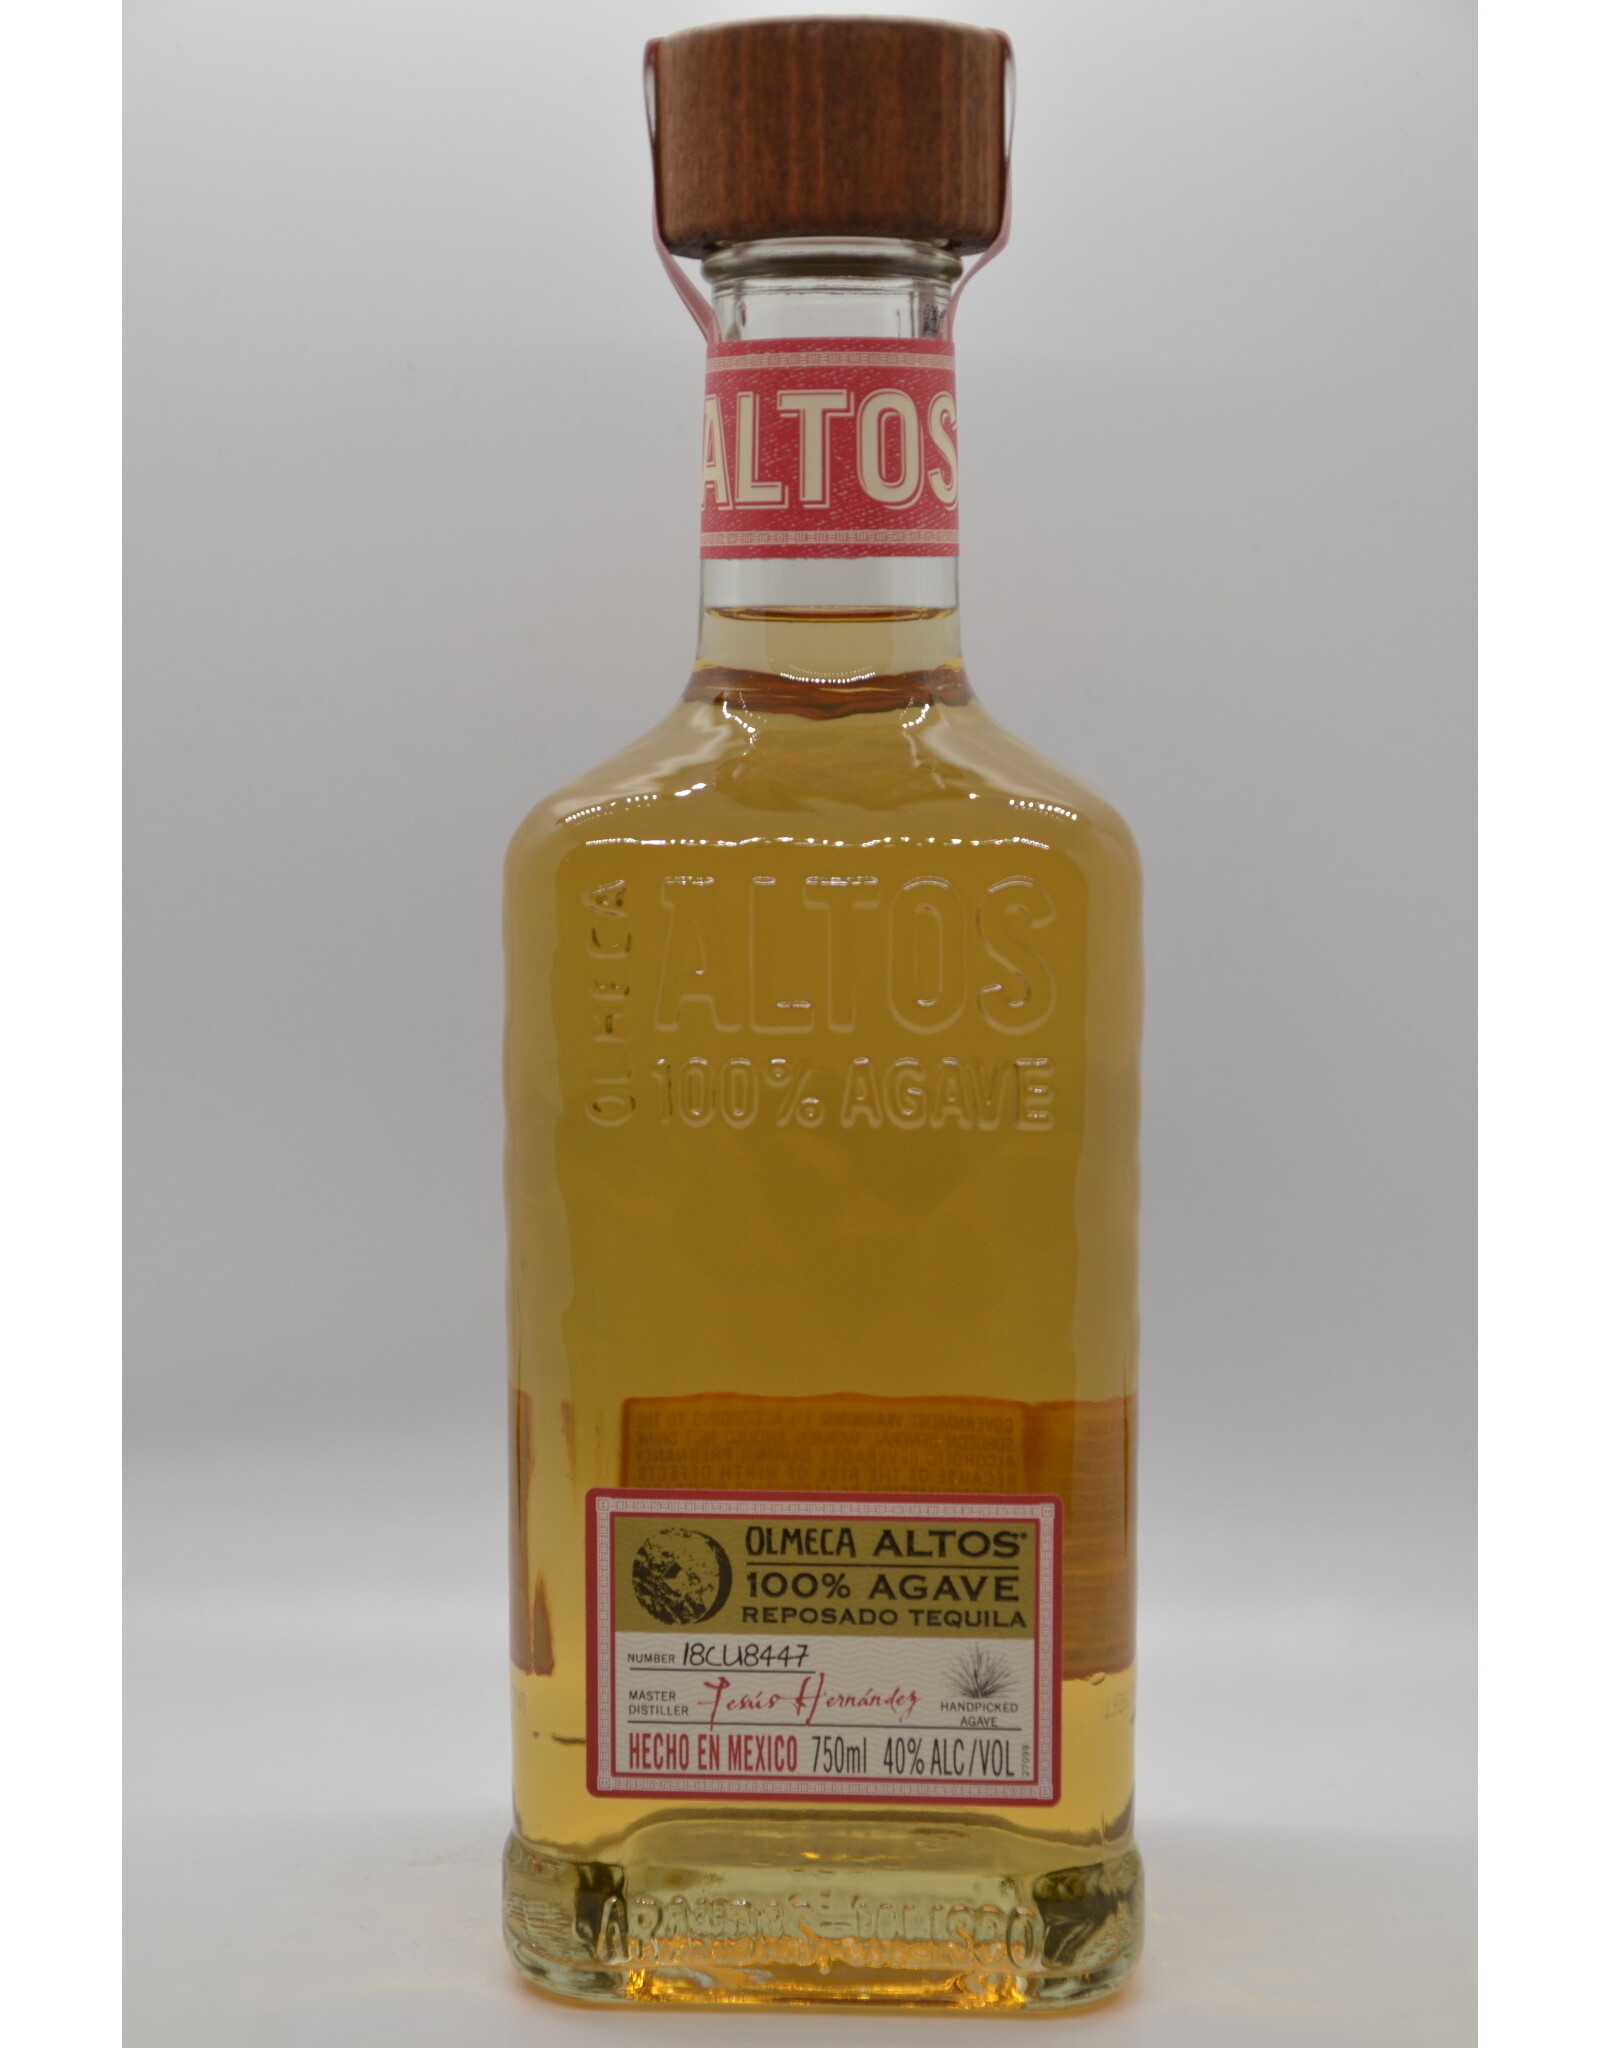 Mexico Olmeca Altos Reposado Tequila 375ml